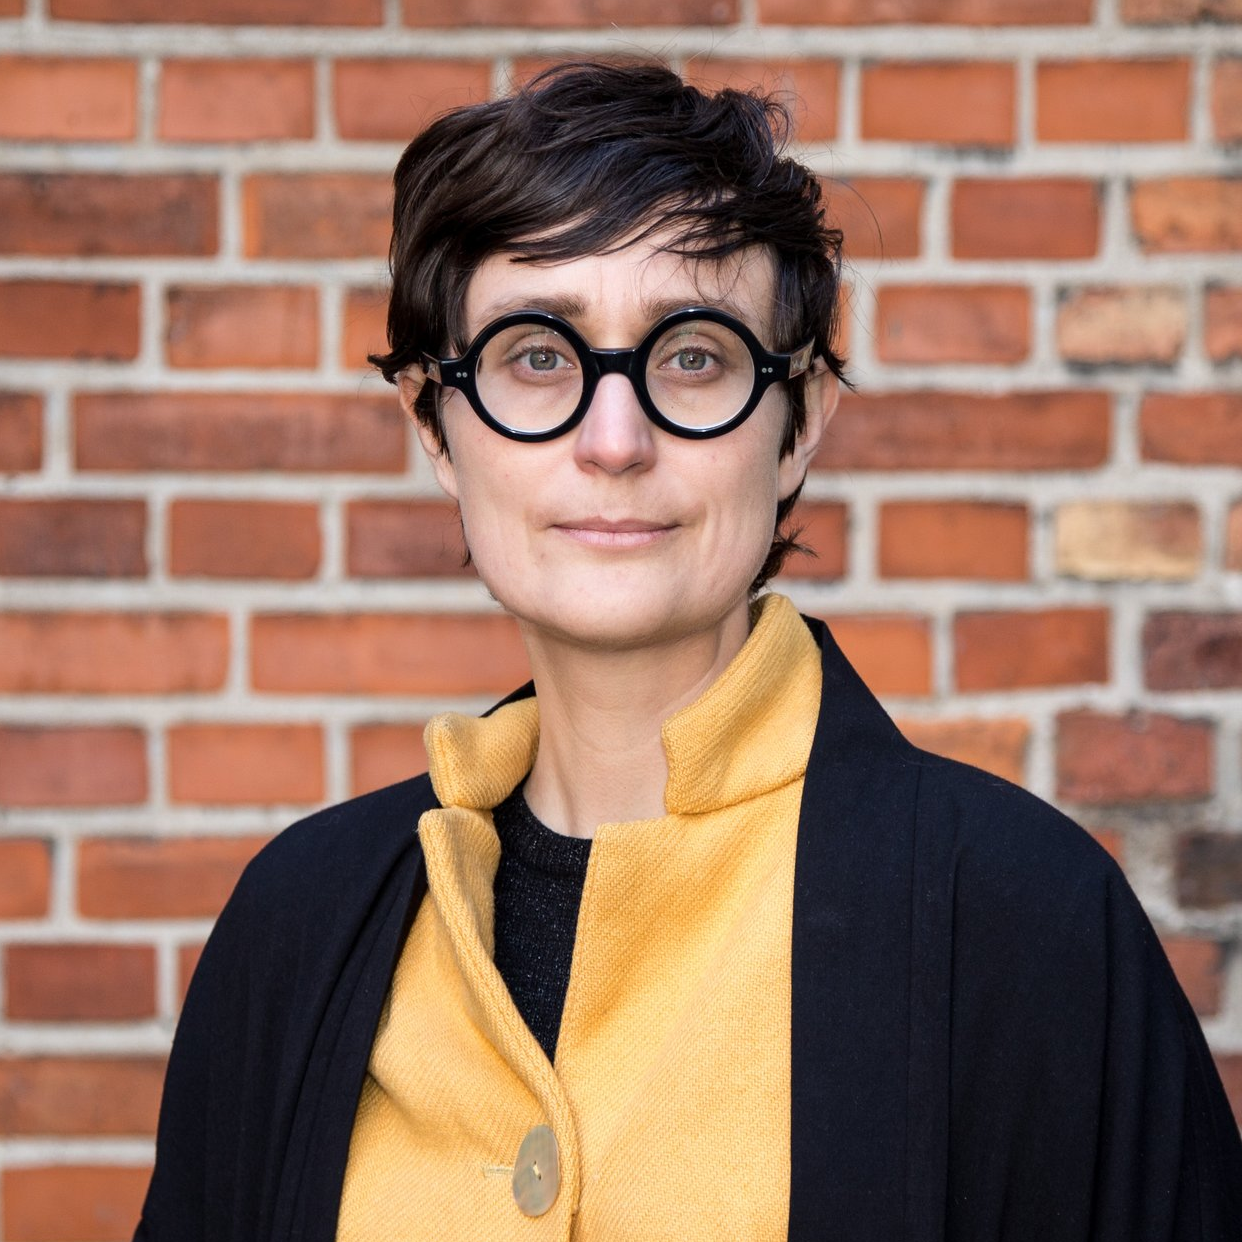 Assistant Professor Matilda Arvidsson